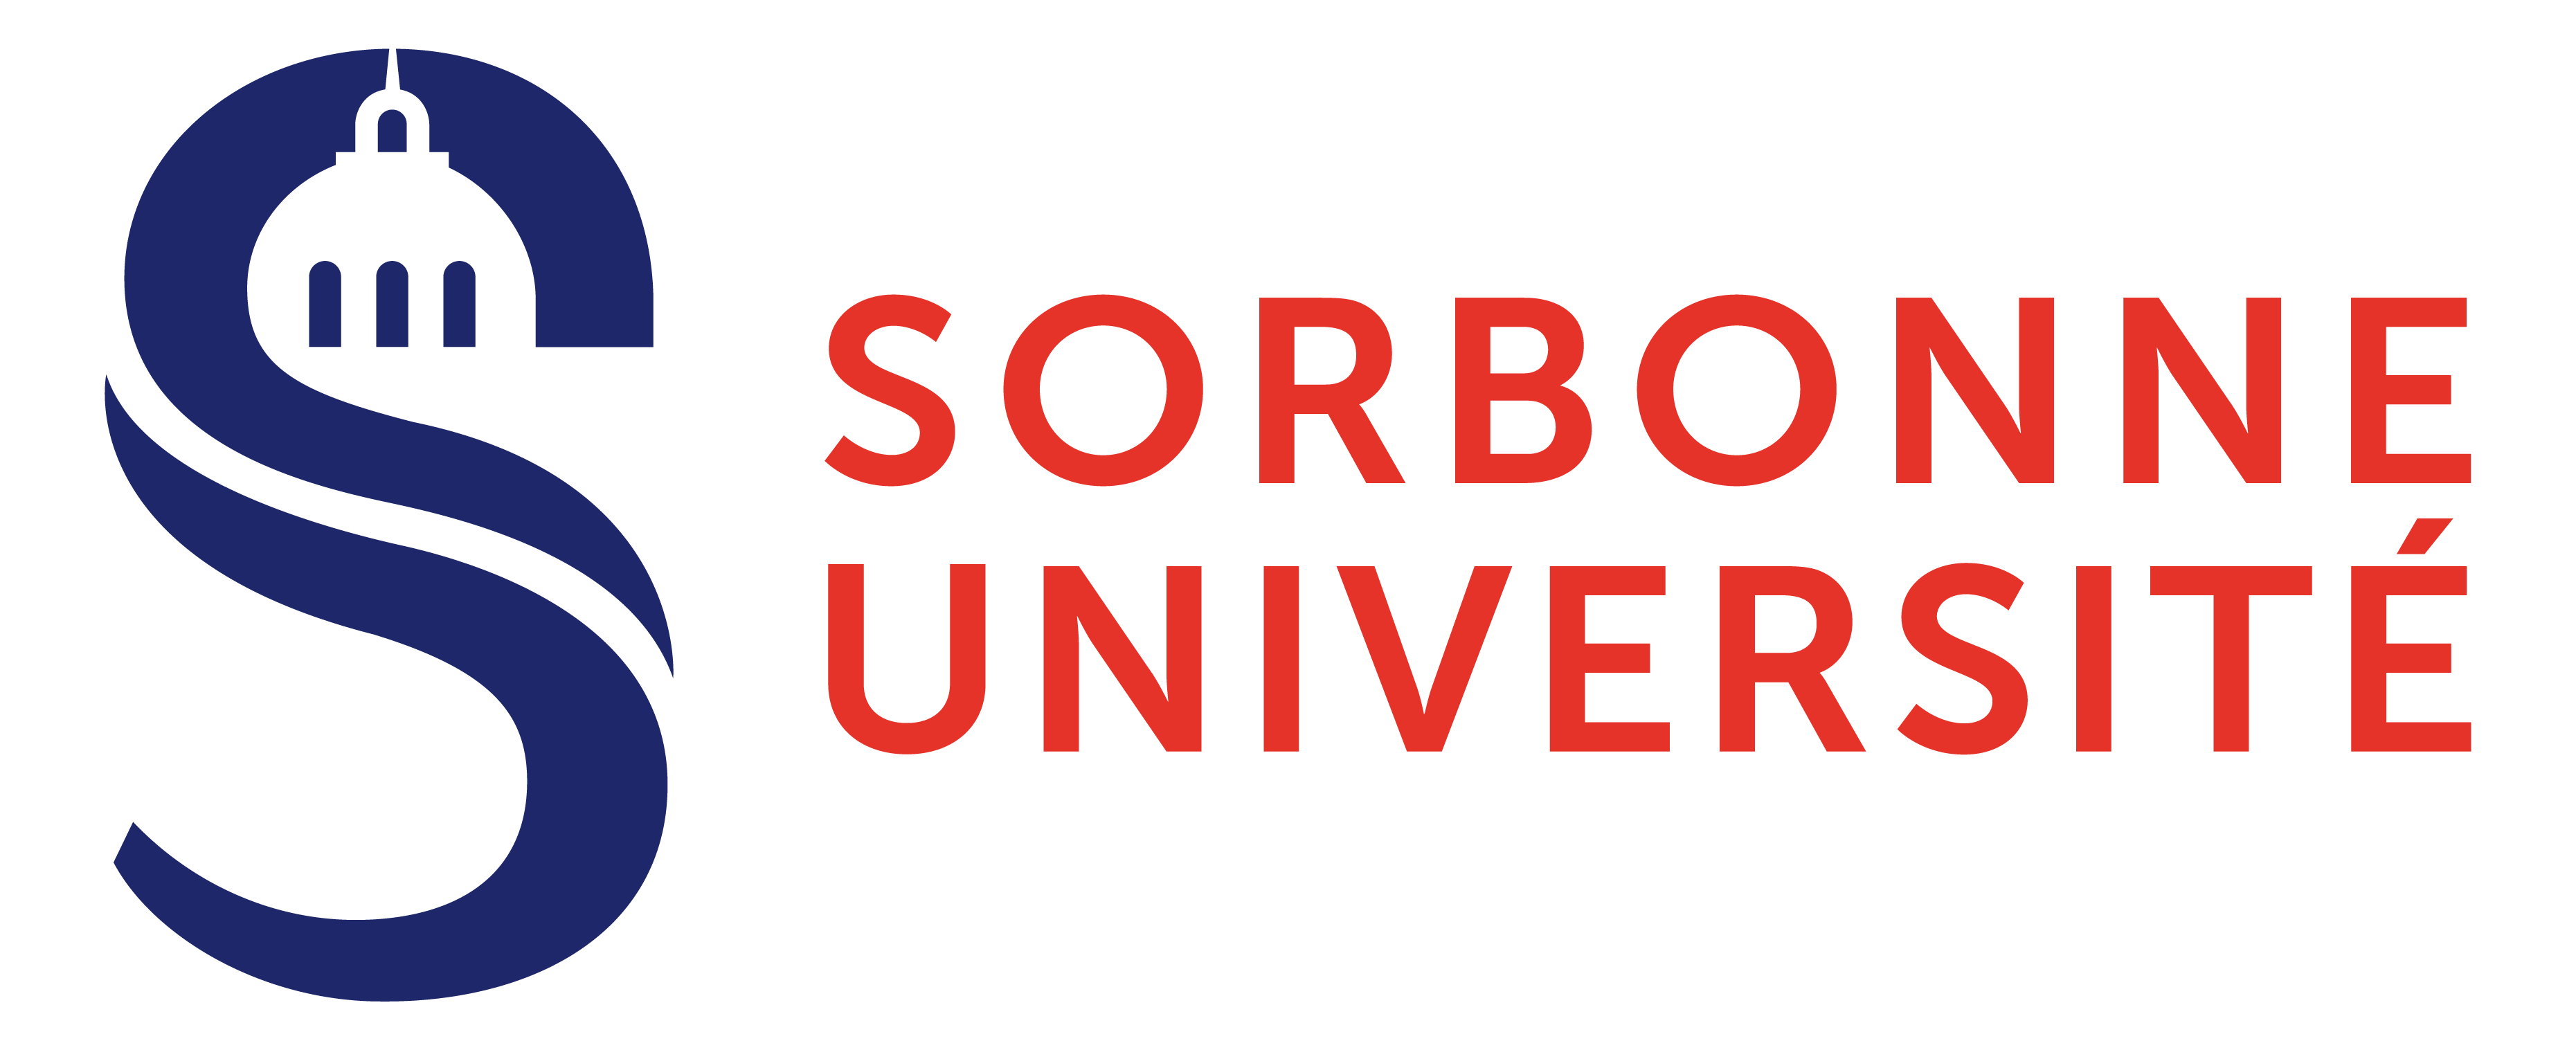 Sorbonne_Université